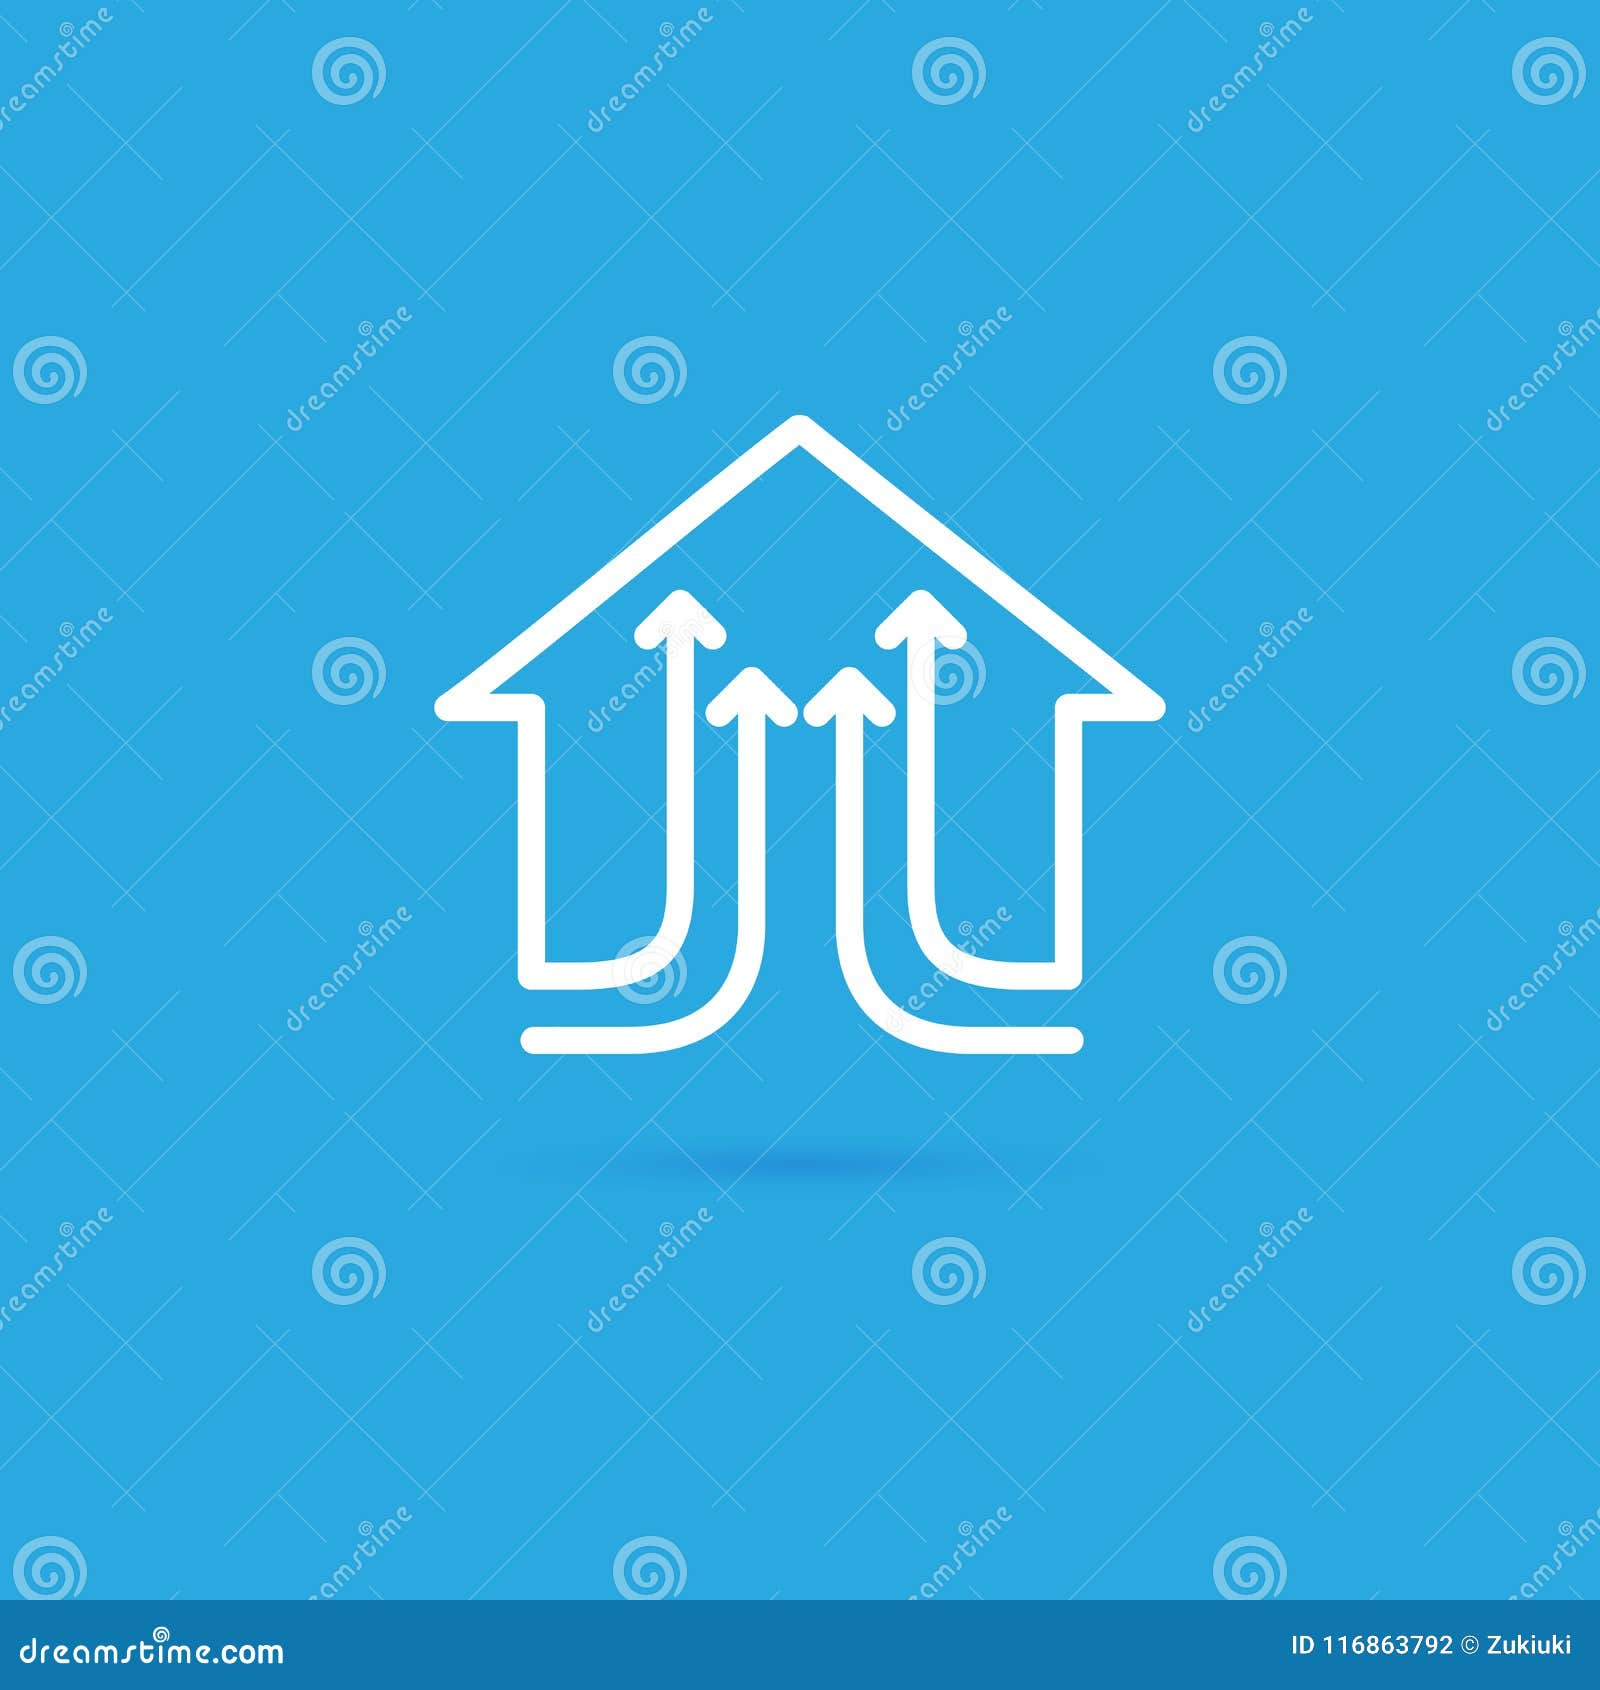 Calibre De Vecteur D'agent Immobilier De Conception De Logo ...